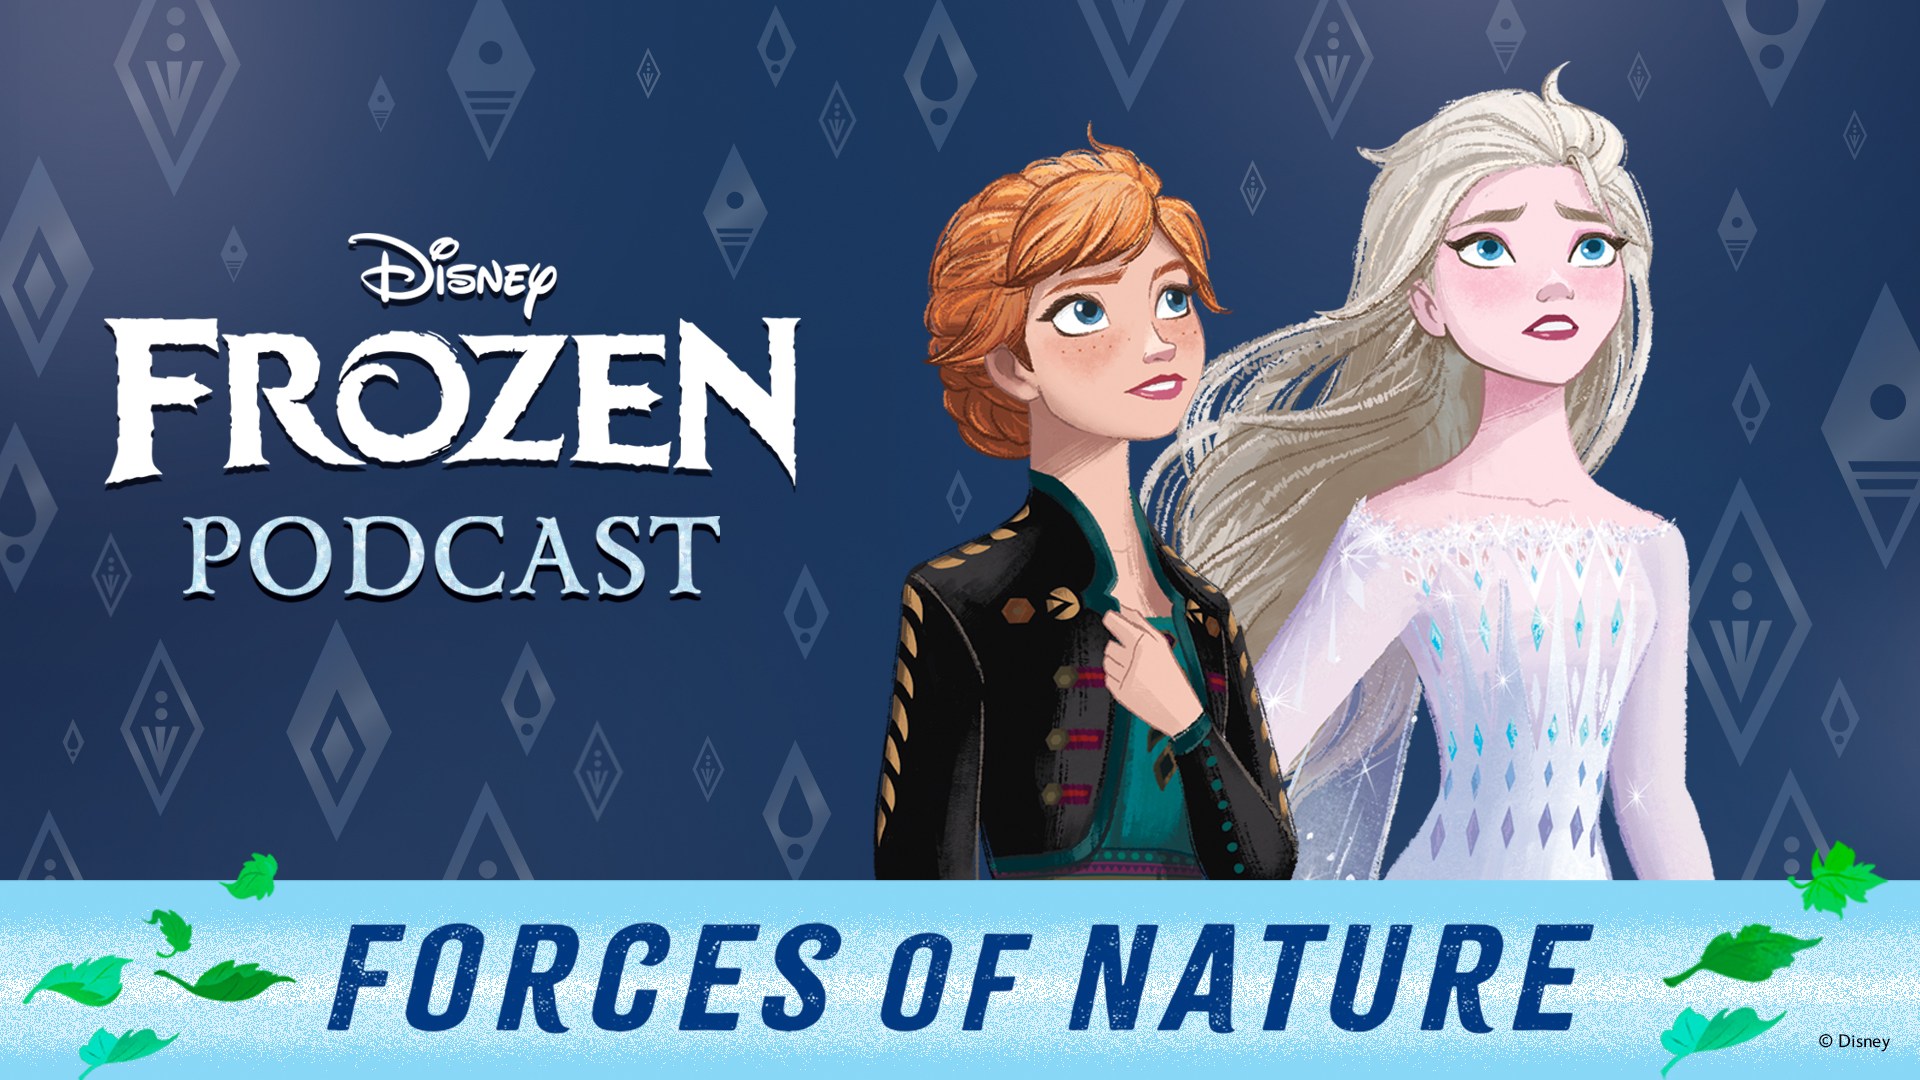 Image inédite de la Reine des neiges 2 : Elsa et Anna ont bien changé ! 